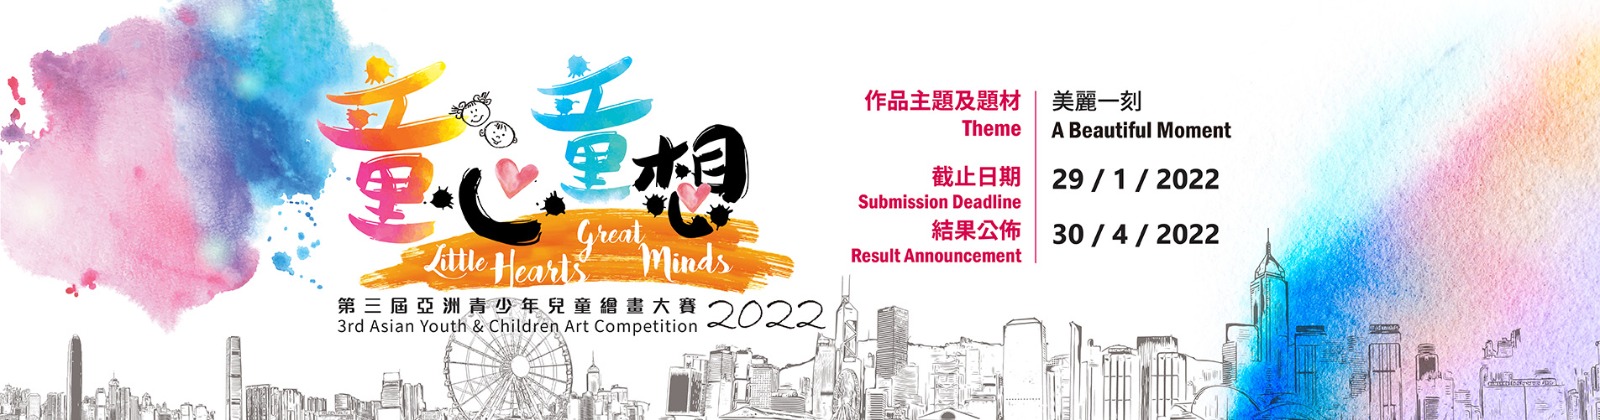 「童心‧童想」第三屆亞洲青少年兒童繪畫大賽2022